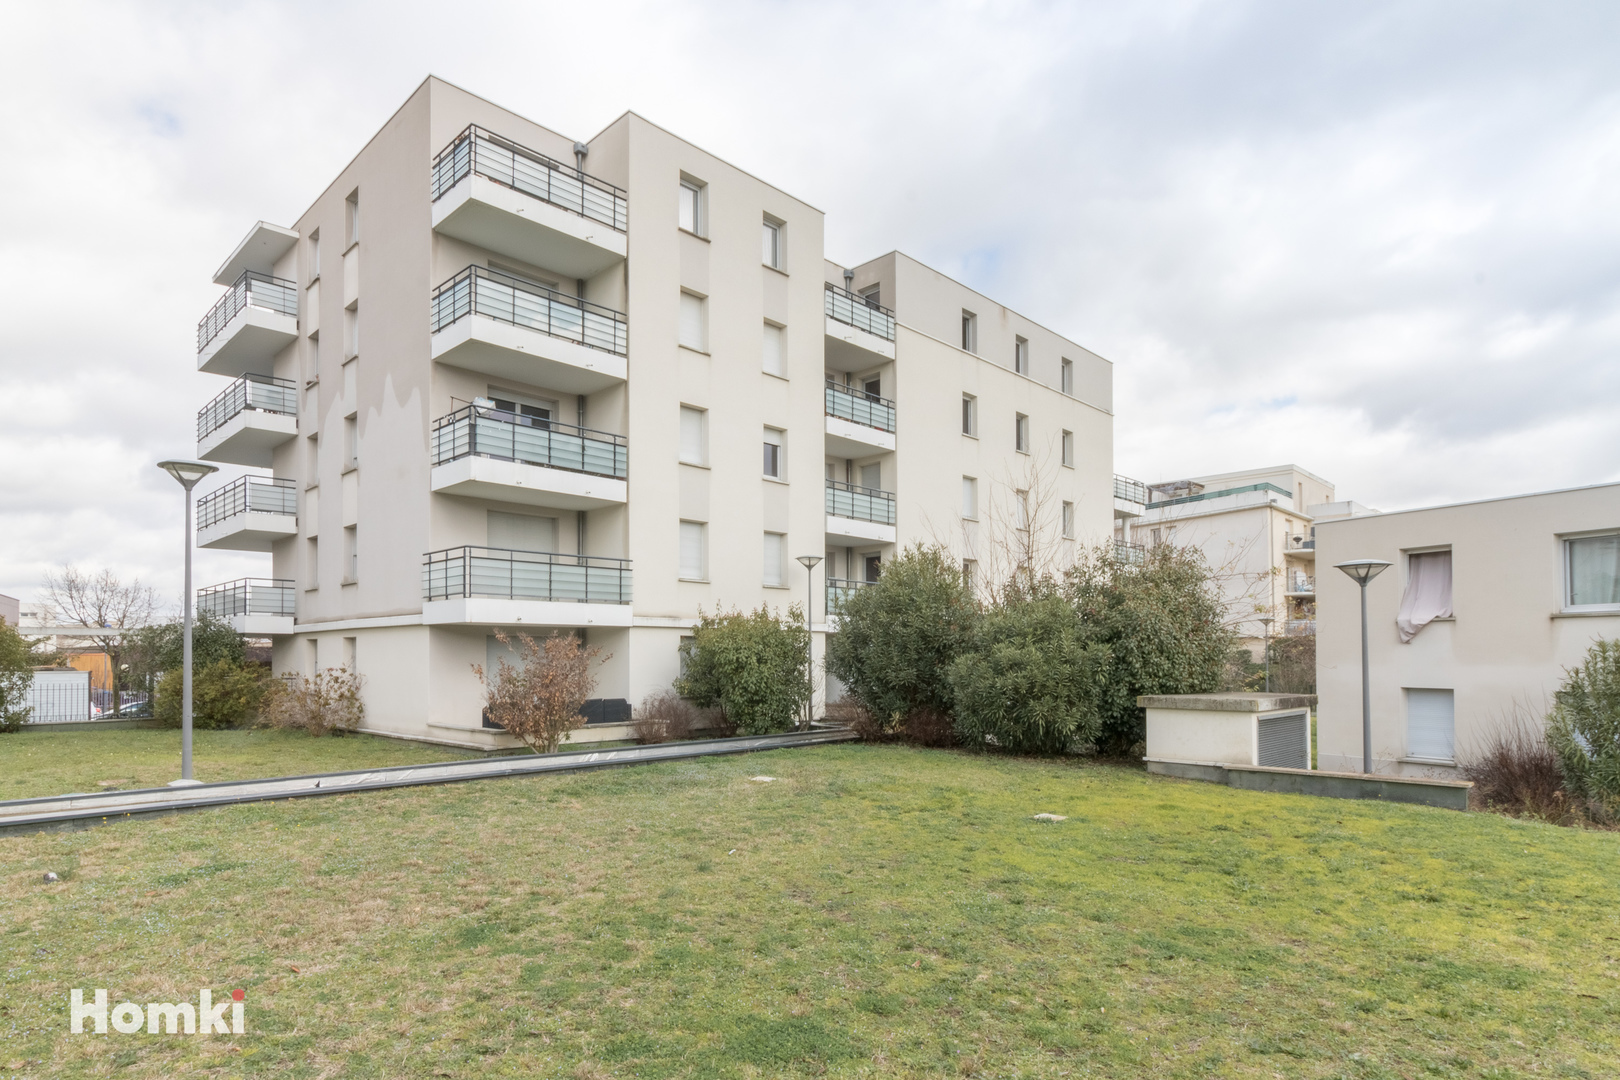 Homki - Vente Appartement  de 67.0 m² à Toulouse 31200